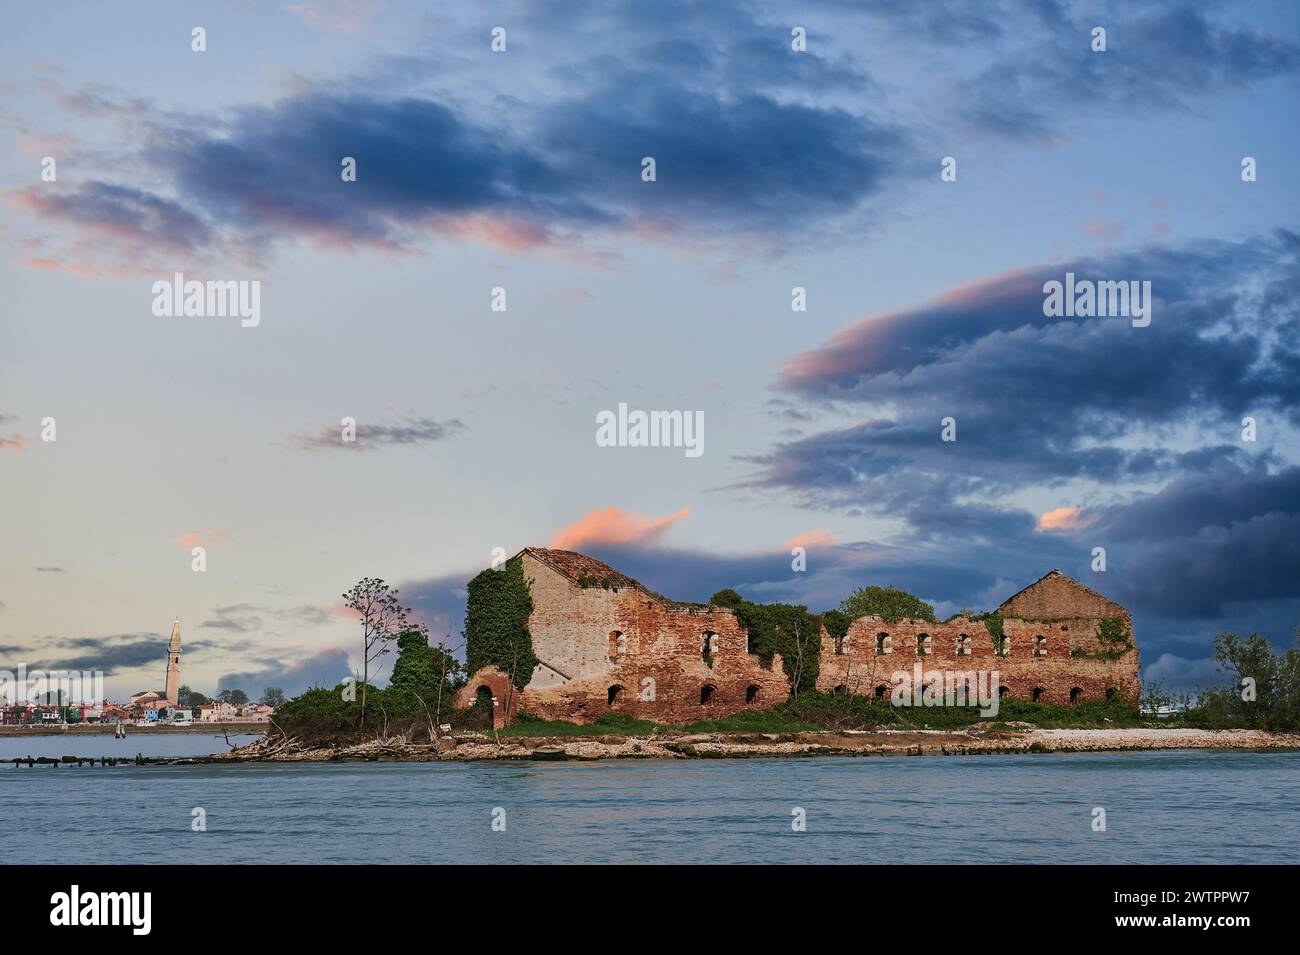 Bâtiment abandonné sur l'île de Madonna del Monte dans la lagune vénitienne avec un ciel dramatique, Italie, Europe Banque D'Images